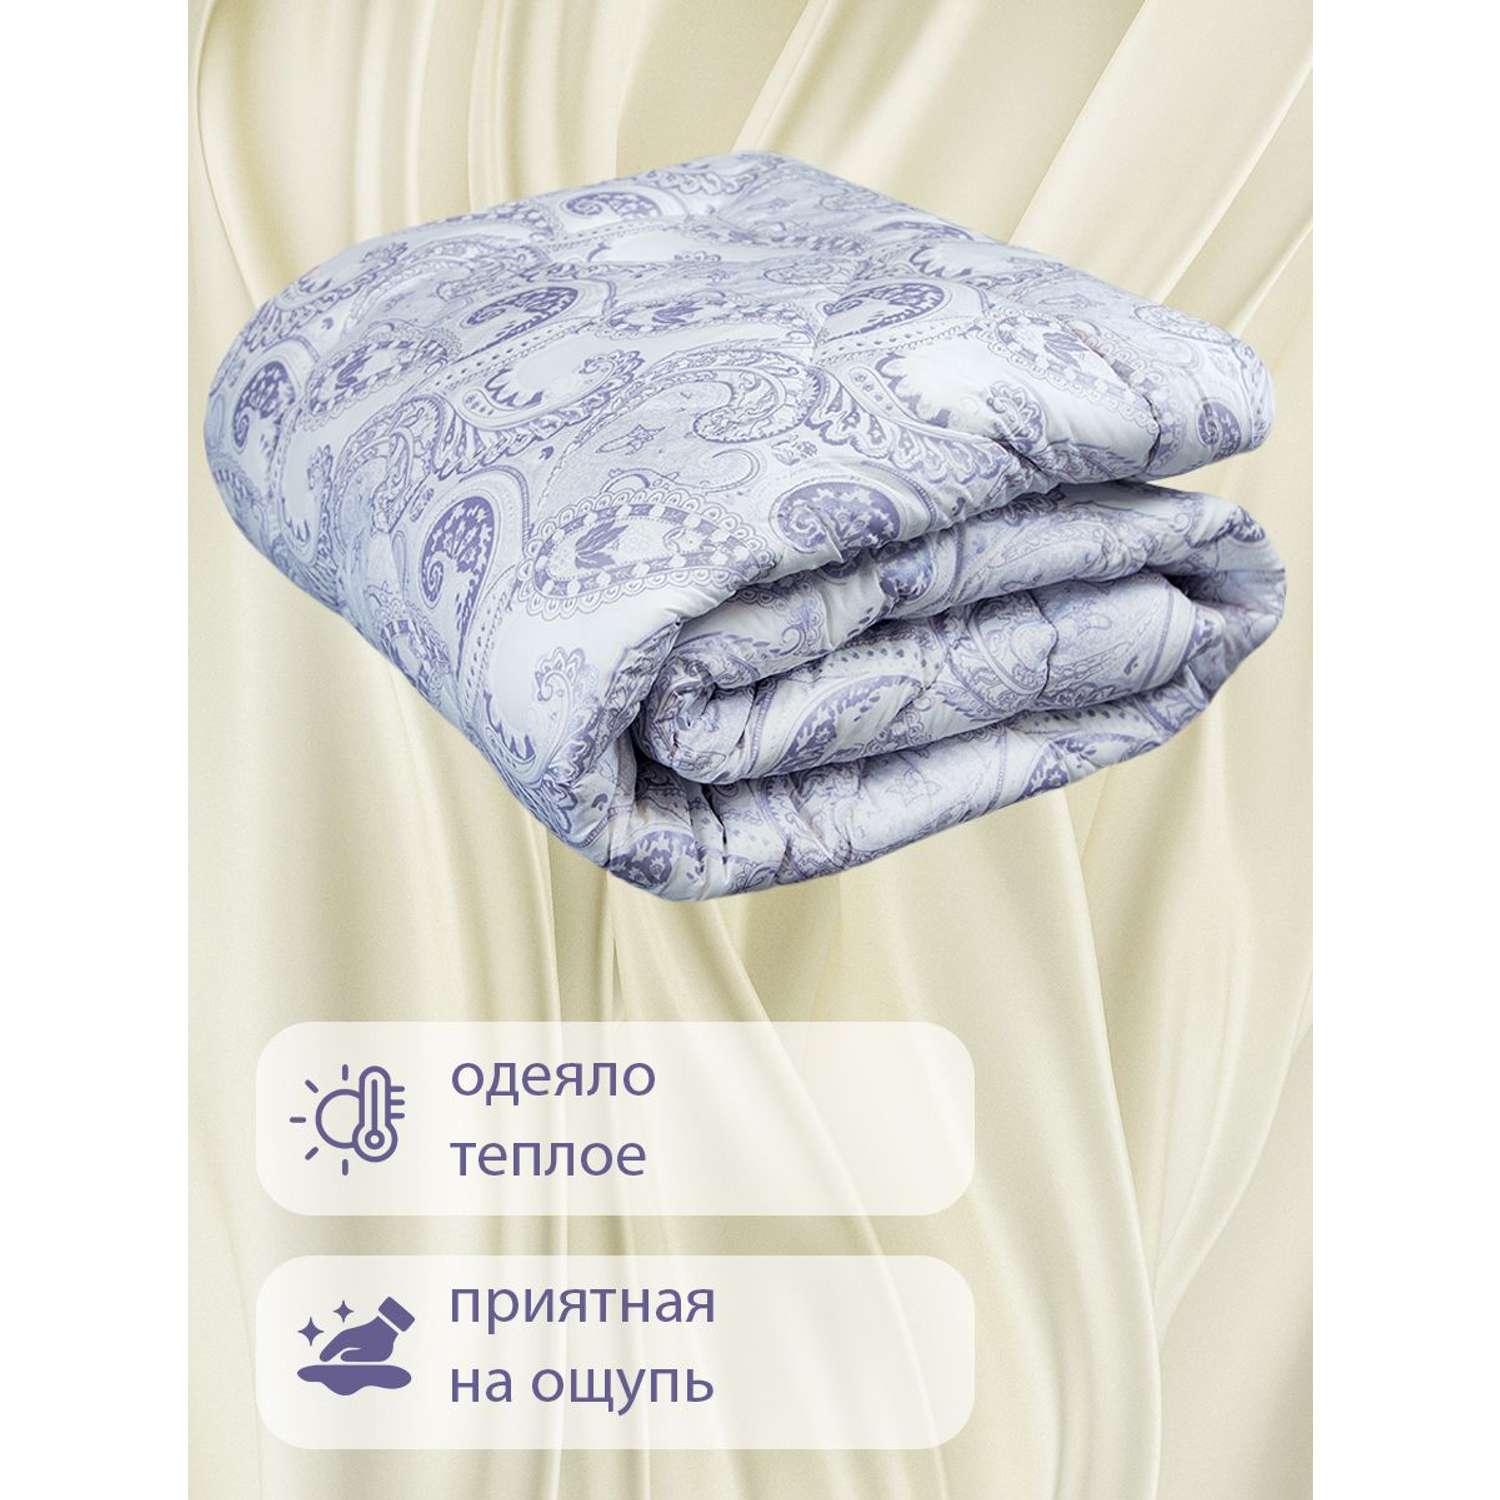 Одеяло SELENA Elegance Line КЕТО Евро 200x215 см всесезонное поплекс 100% наполнитель Лебяжий пух - фото 3